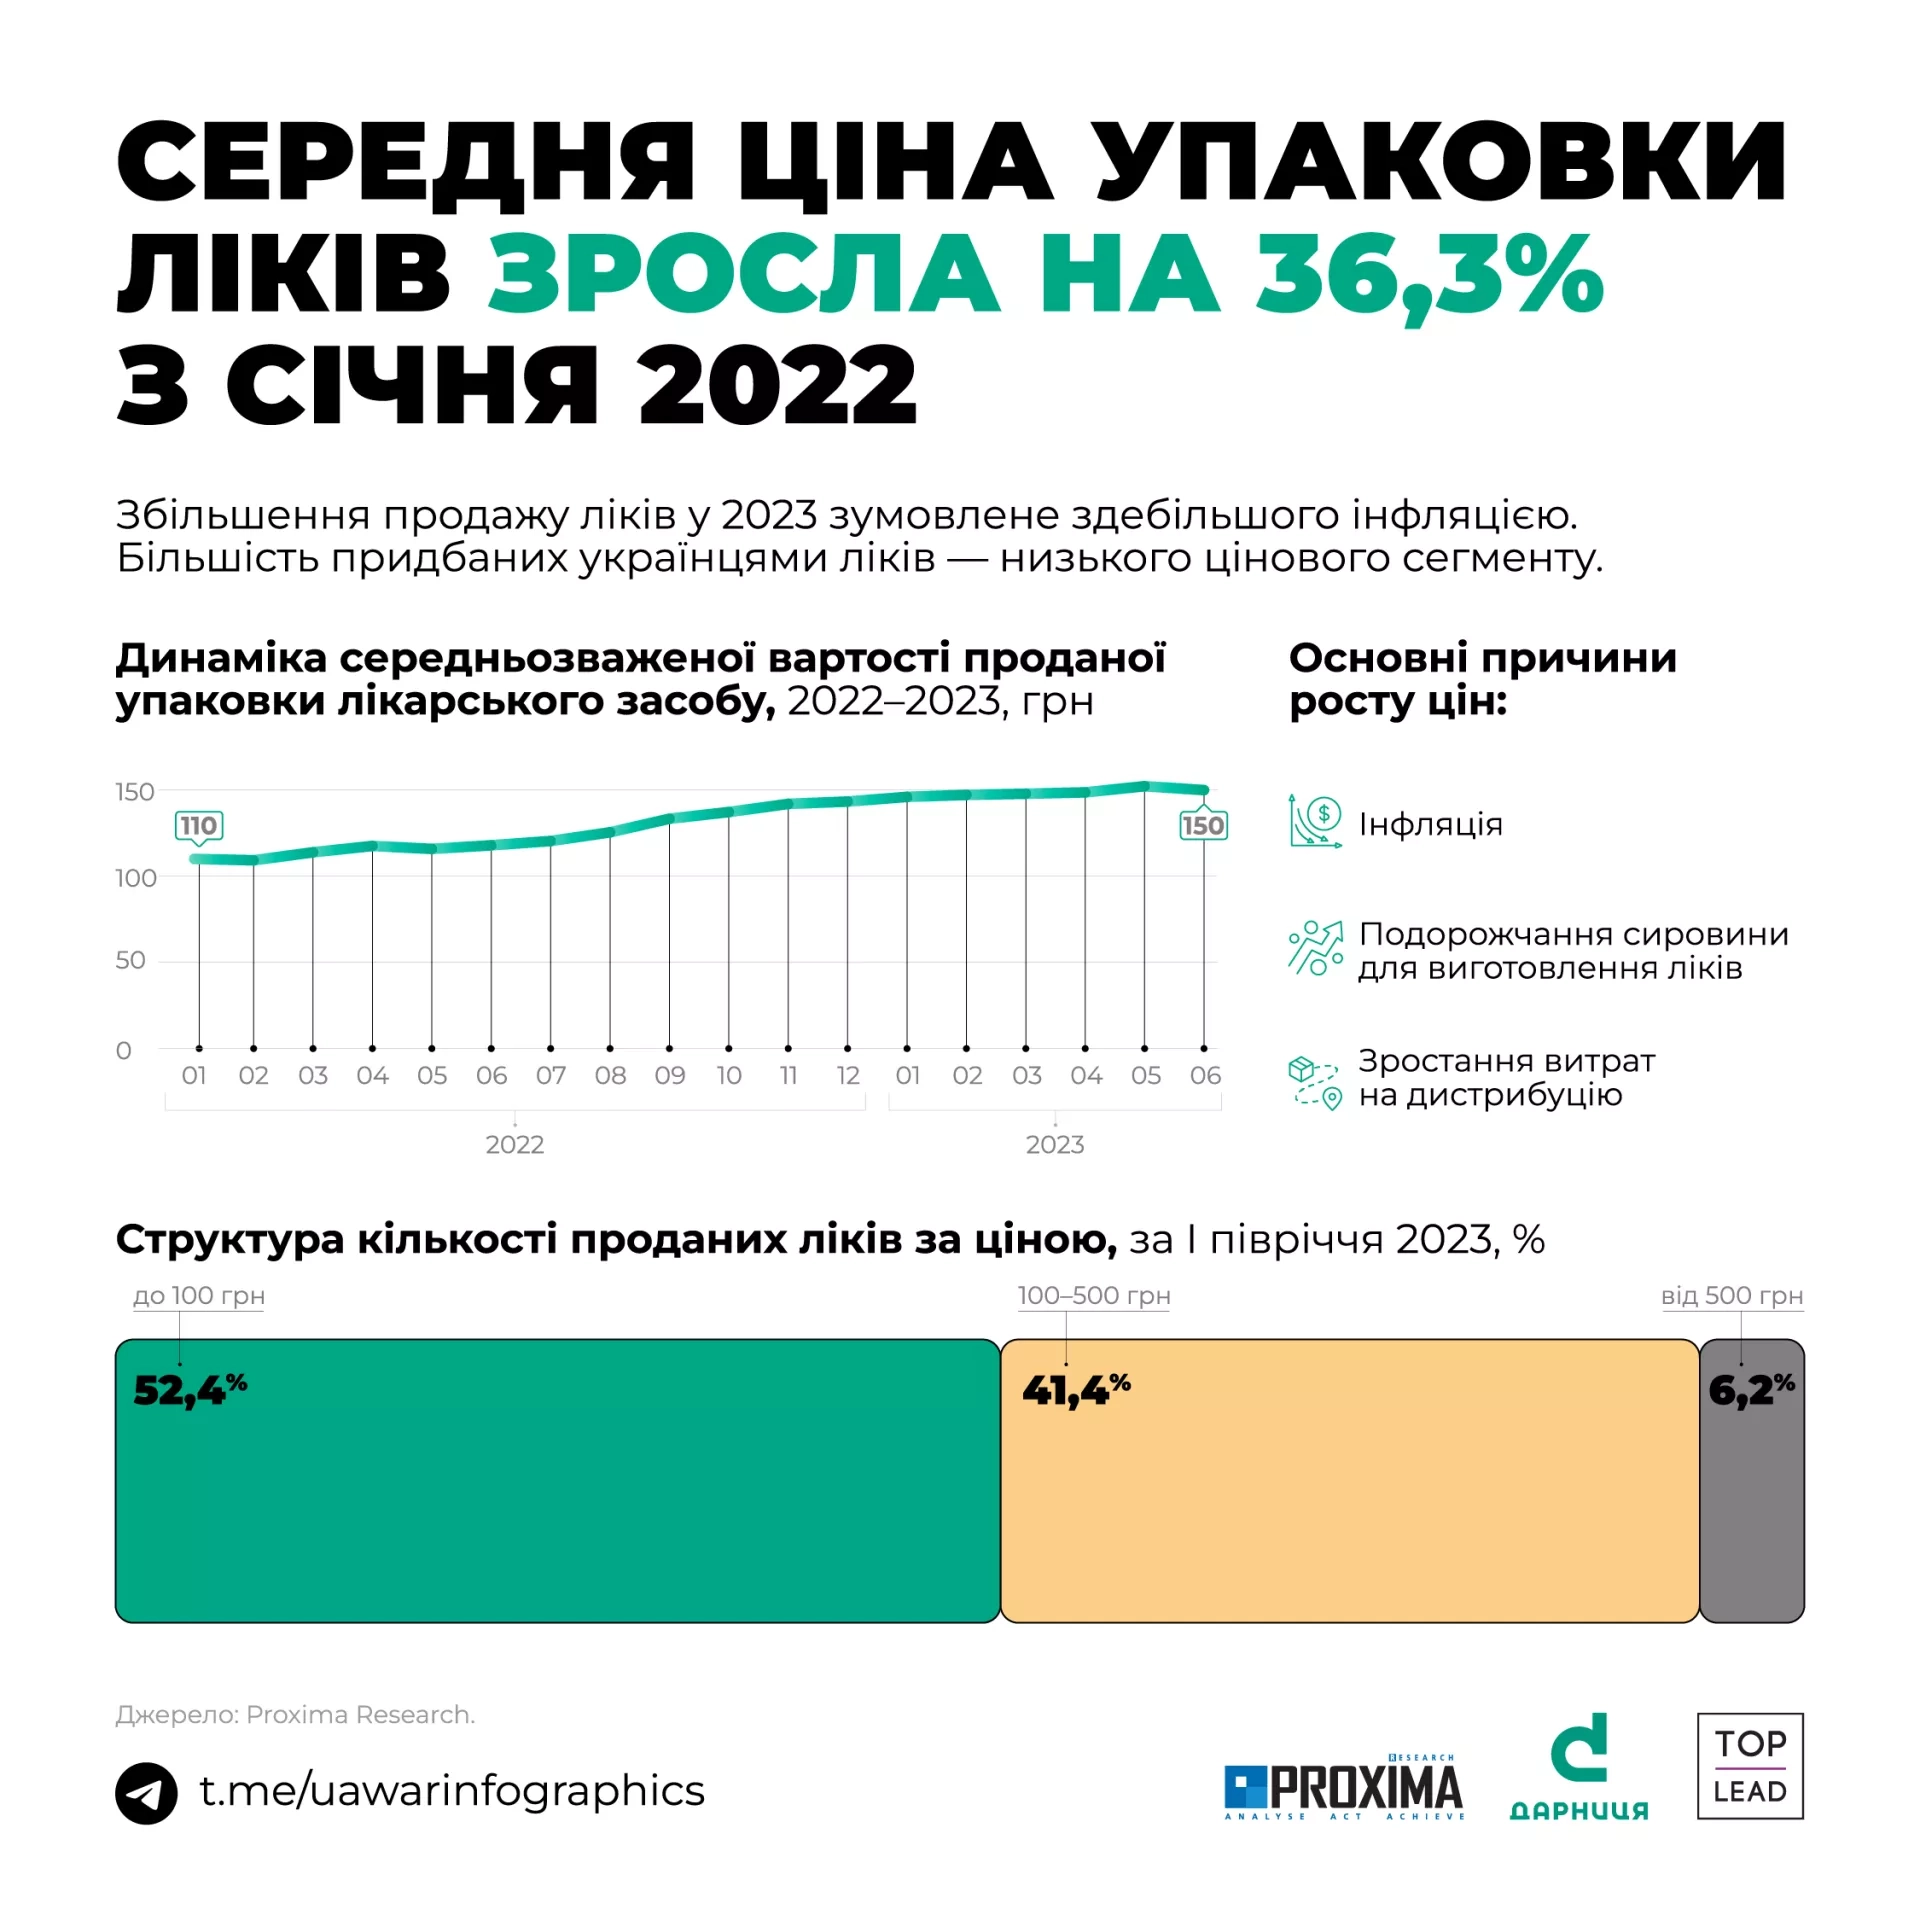 «Дарниця» розповіла про топ-3 тенденції на фармацевтичному ринку України